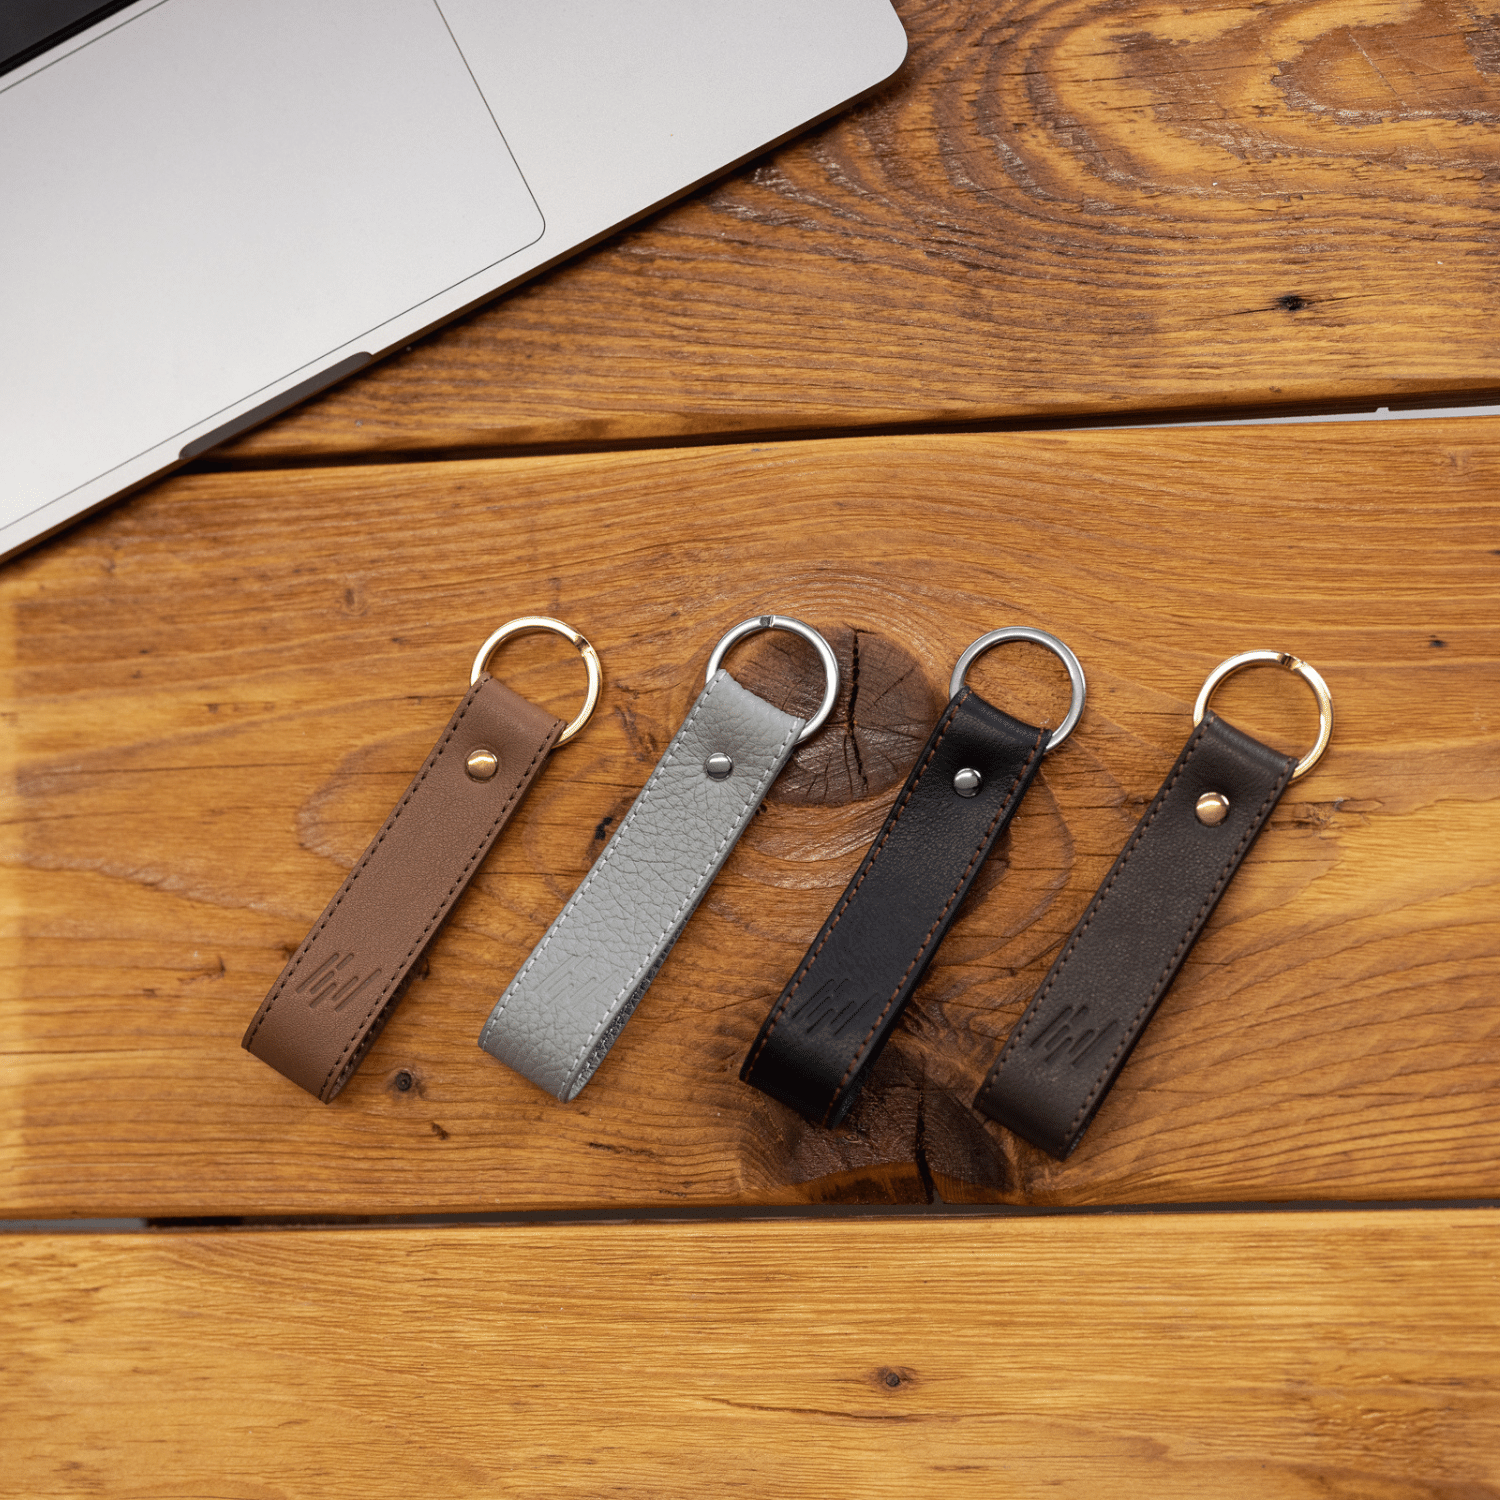 TiCad Accesoire Schlüsselanhänger Classic aus Leder liegt auf Holzboden